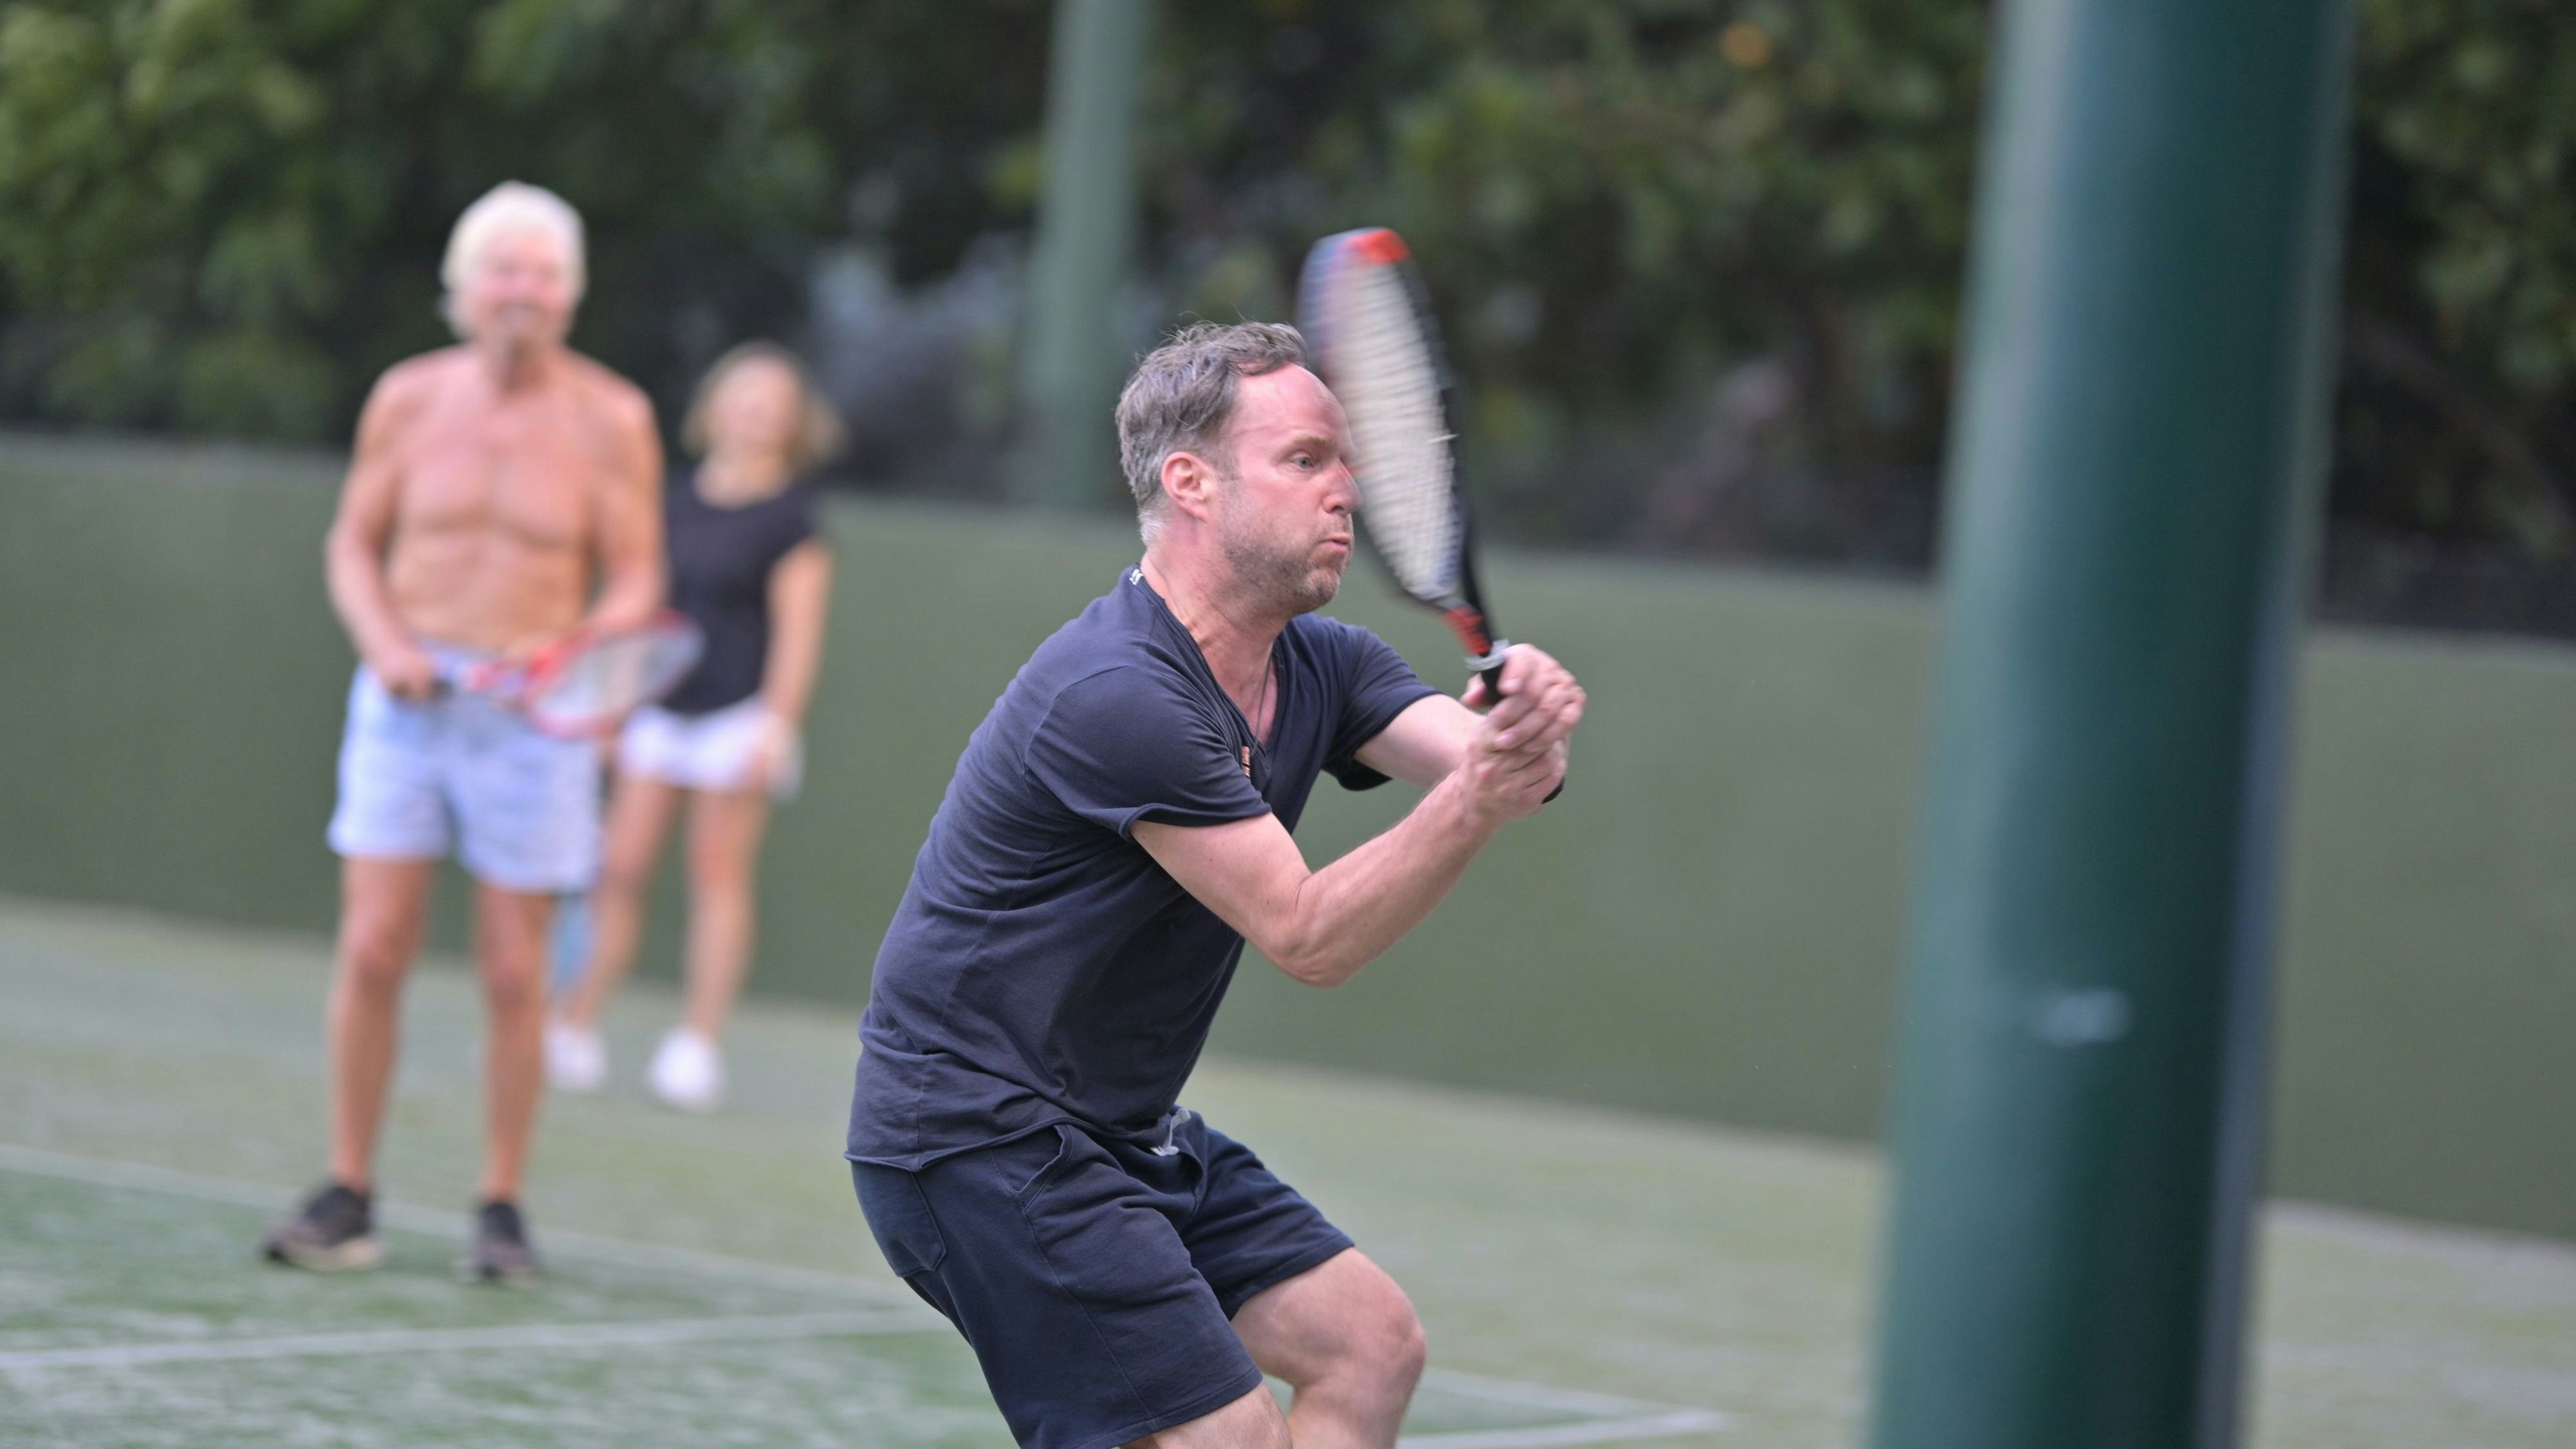 Hart am Netz: Matthias Strolz während einer Tennis-Session mit dem britischen Selfmade-Milliardär, der sich mit nacktem Oberkörper eher im Hintergrund hielt